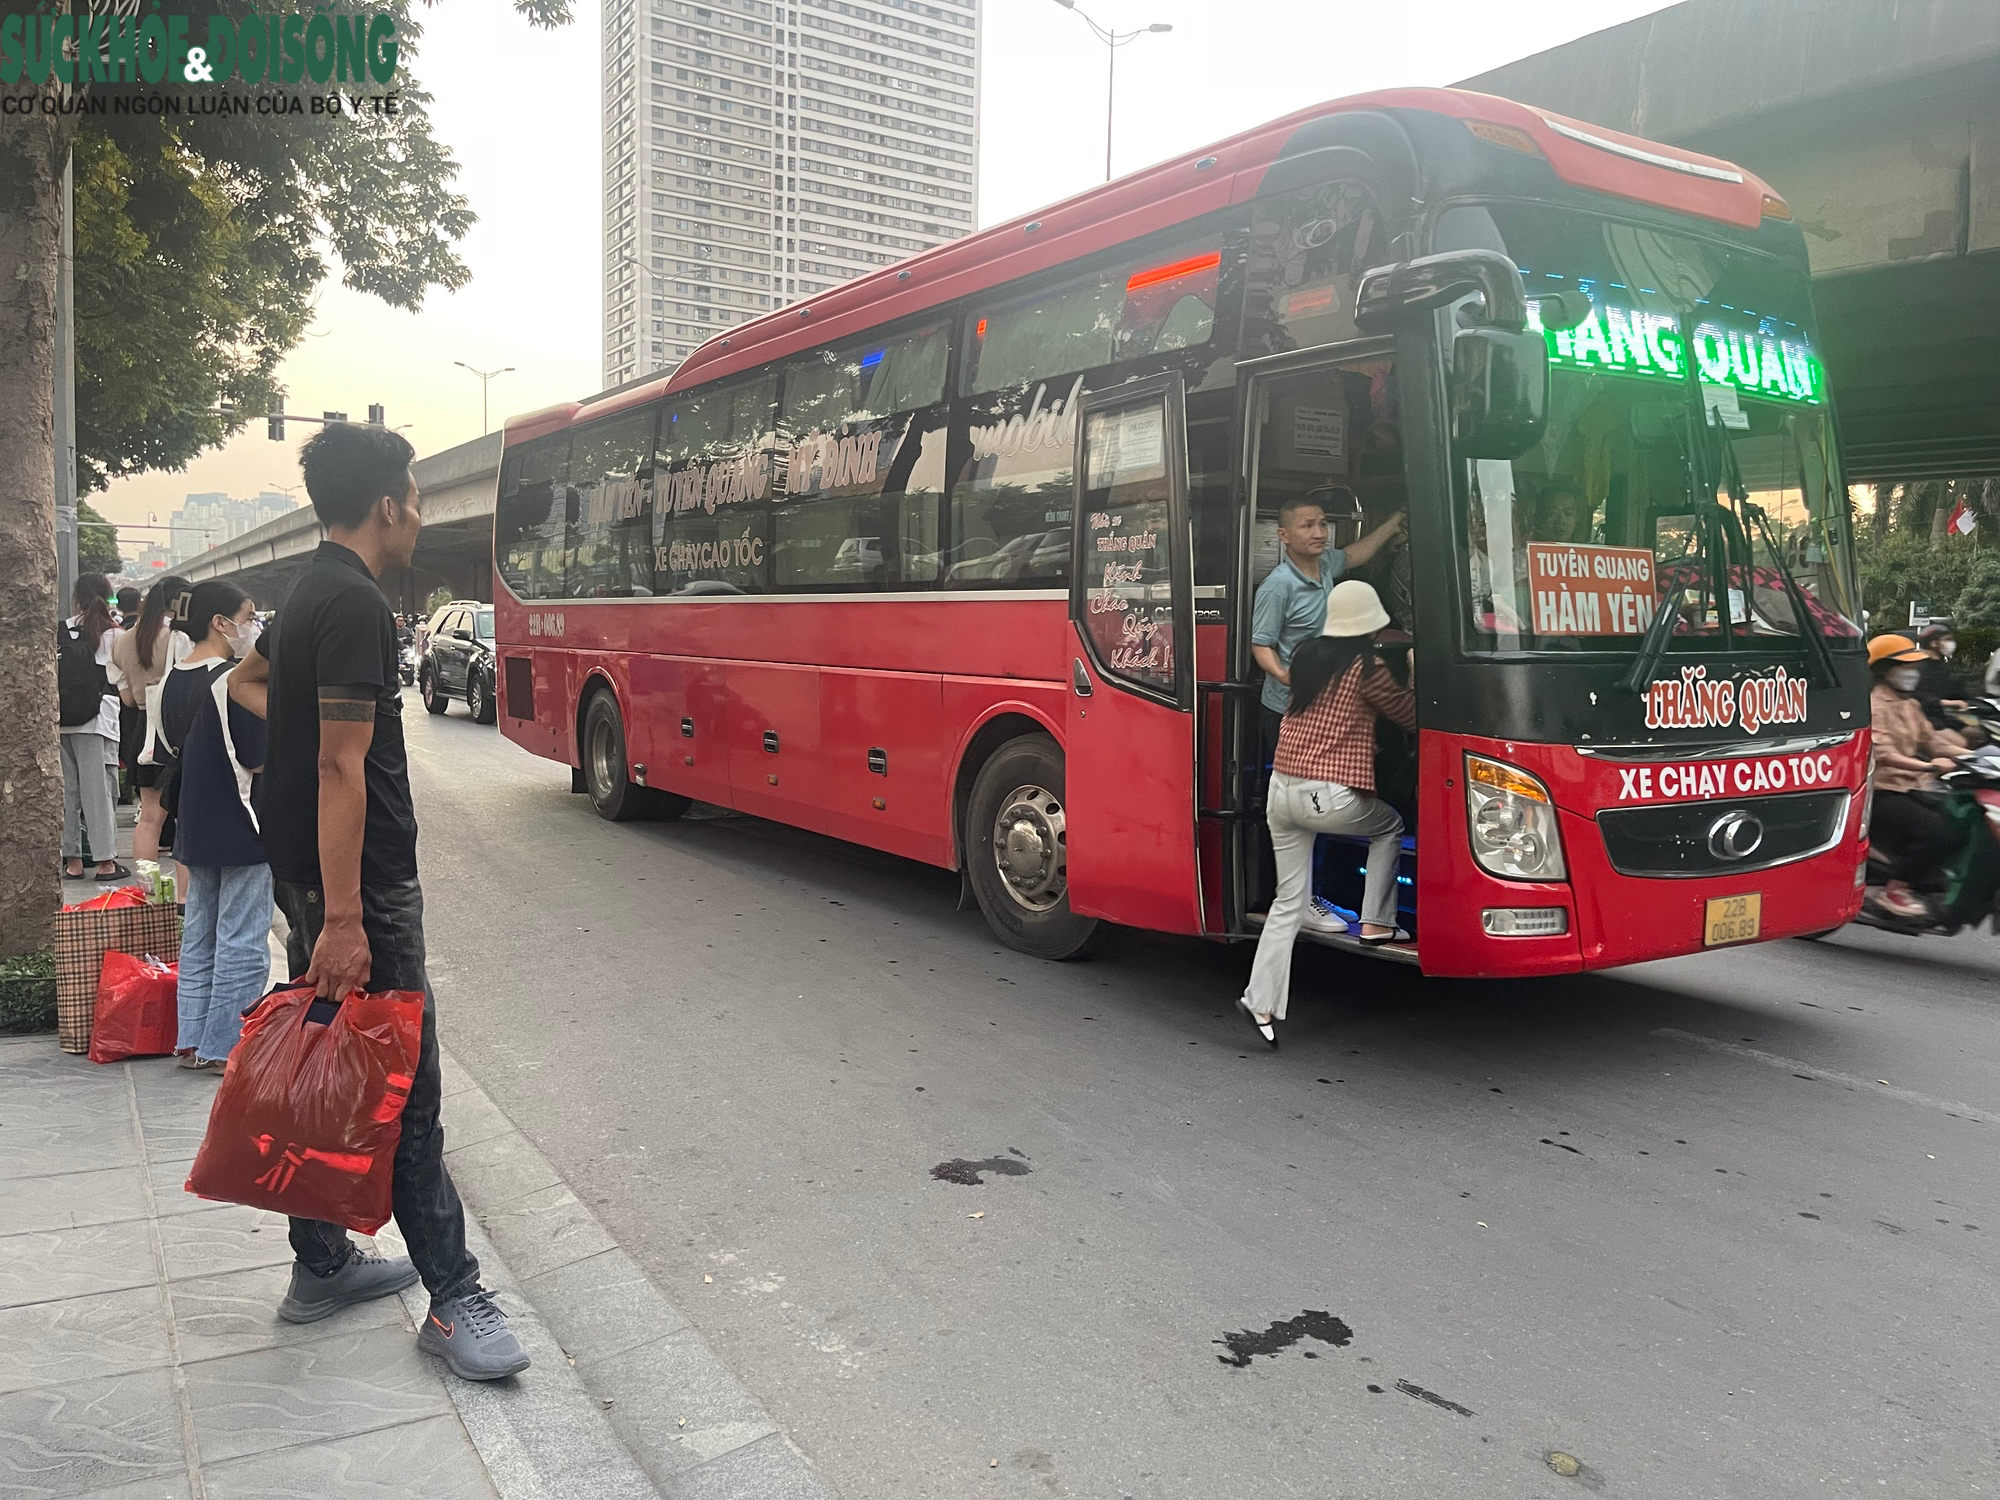 Hà Nội: Hàng loạt xe khách 'họp chợ' trên đường- Ảnh 5.